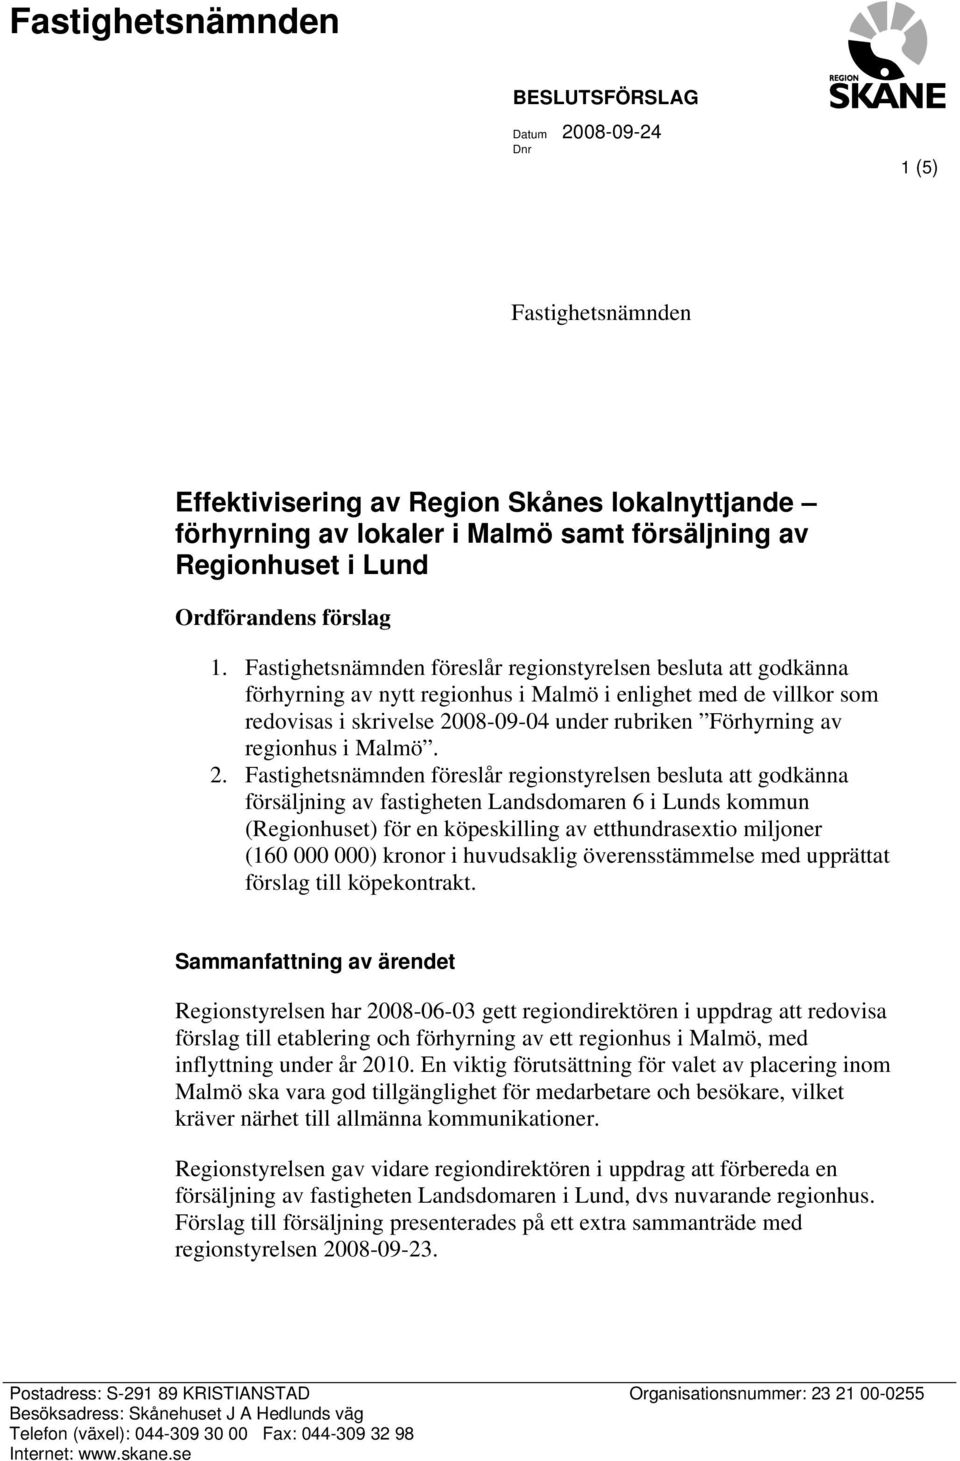 Fastighetsnämnden föreslår regionstyrelsen besluta att godkänna förhyrning av nytt regionhus i Malmö i enlighet med de villkor som redovisas i skrivelse 2008-09-04 under rubriken Förhyrning av